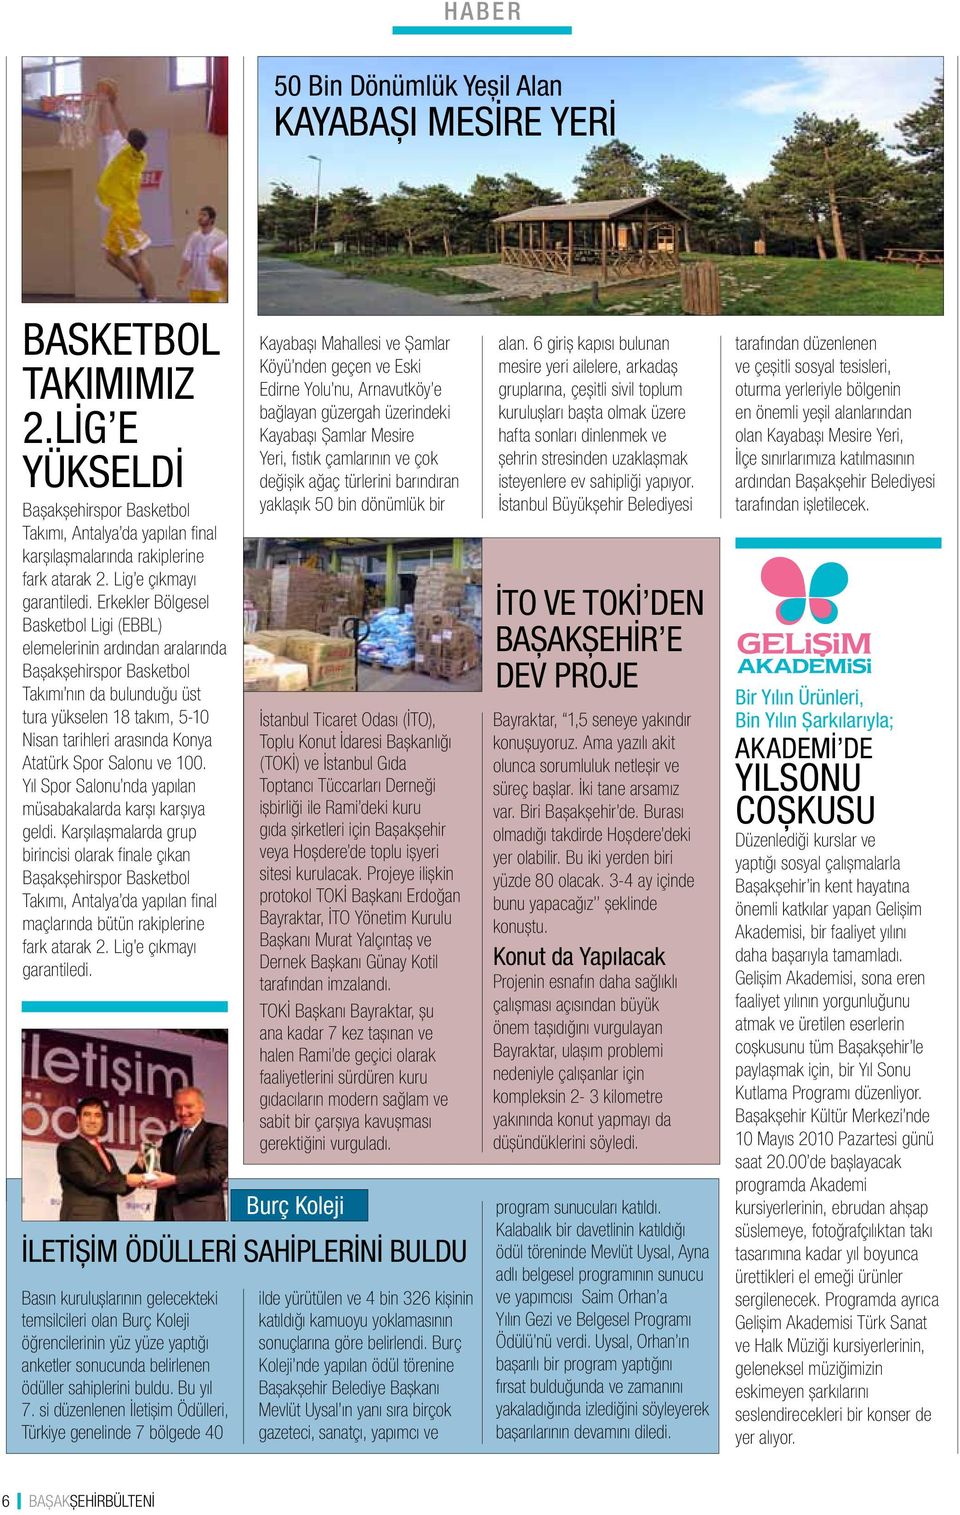 Erkekler Bölgesel Basketbol Ligi (EBBL) elemelerinin ardından aralarında Başakşehirspor Basketbol Takımı nın da bulunduğu üst tura yükselen 18 takım, 5-10 Nisan tarihleri arasında Konya Atatürk Spor